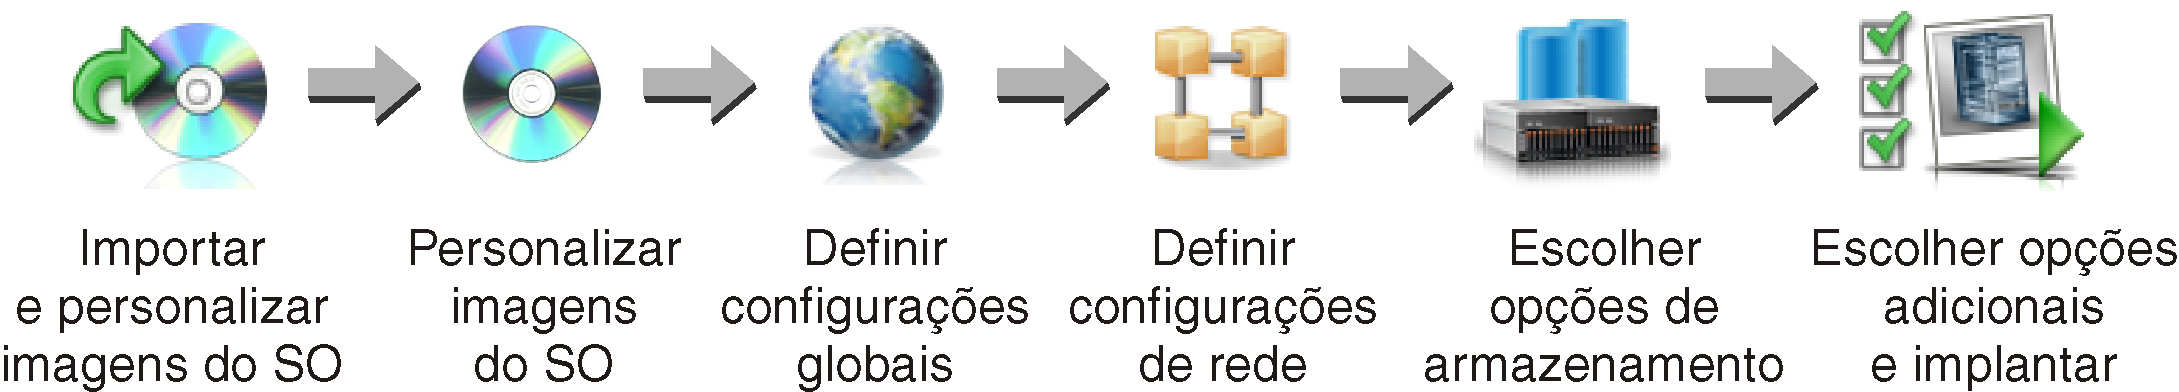 Ilustra as etapas envolvidas ao gerenciar e implantar imagens do sistema operacional, incluindo importação e personalização de imagens do SO, definição de configurações globais, definição de configurações de rede, configuração do local de armazenamento e implantação de imagens.